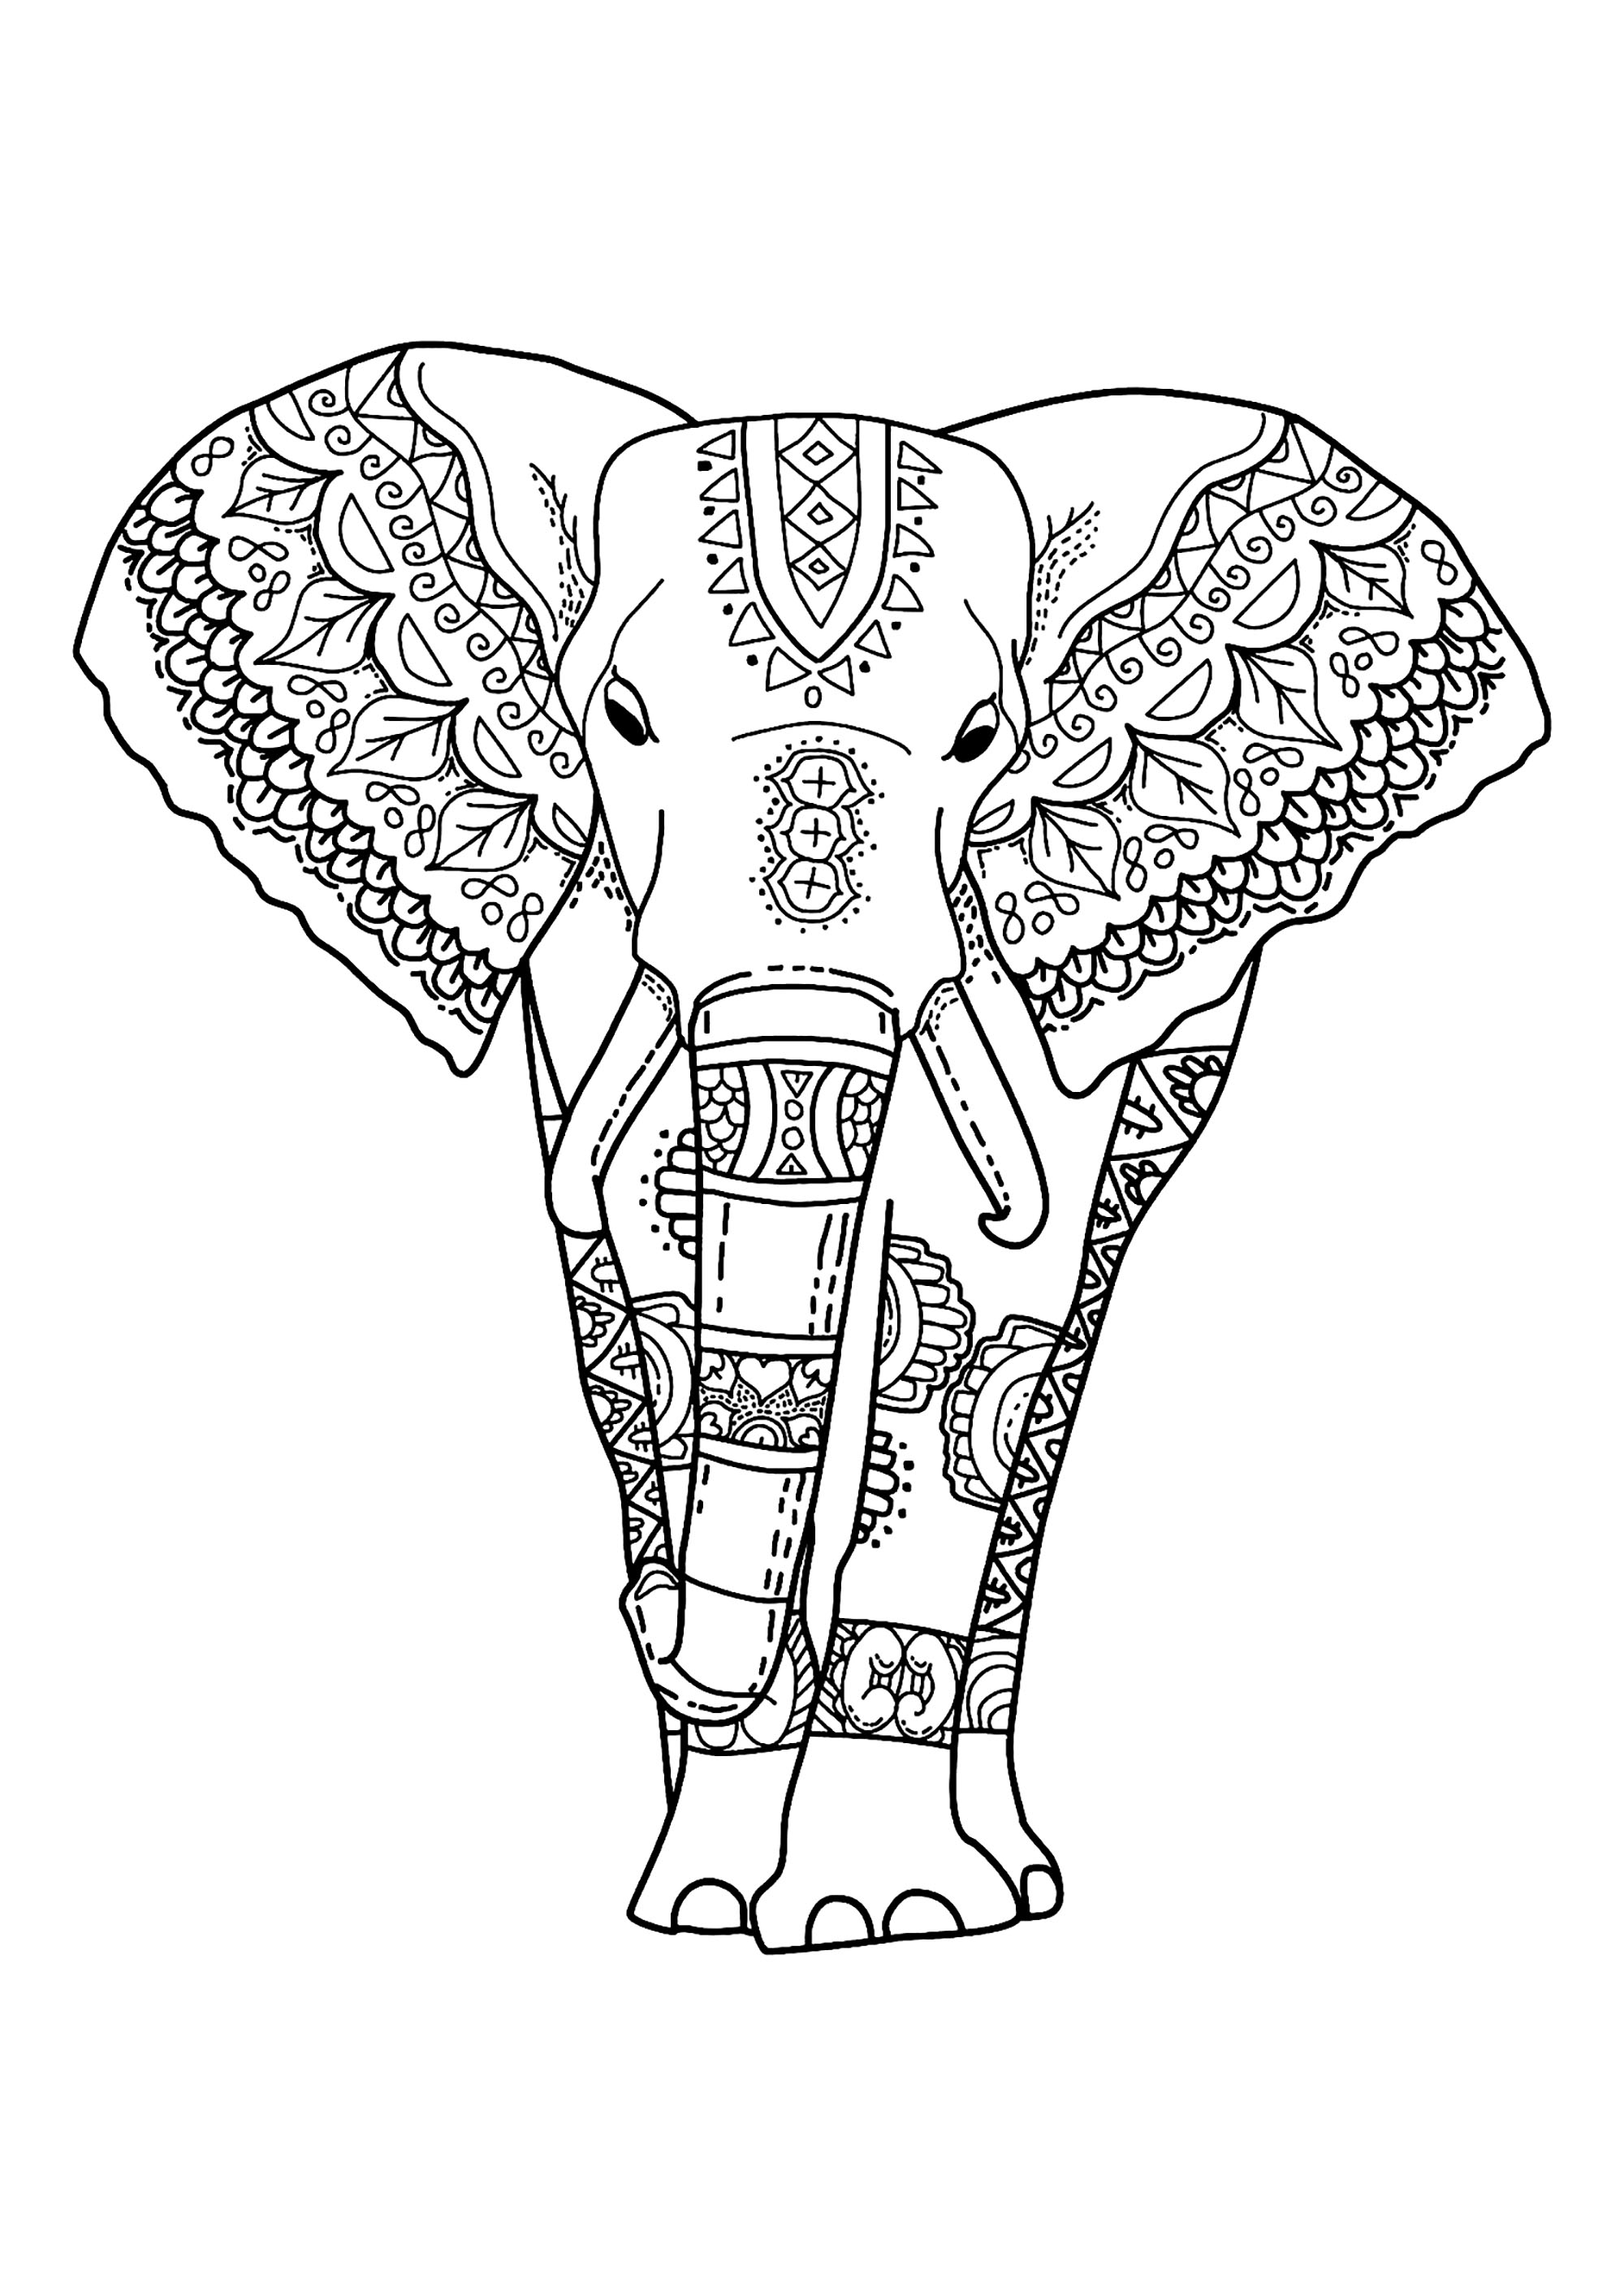 Image d'éléphant à colorier, facile pour enfants